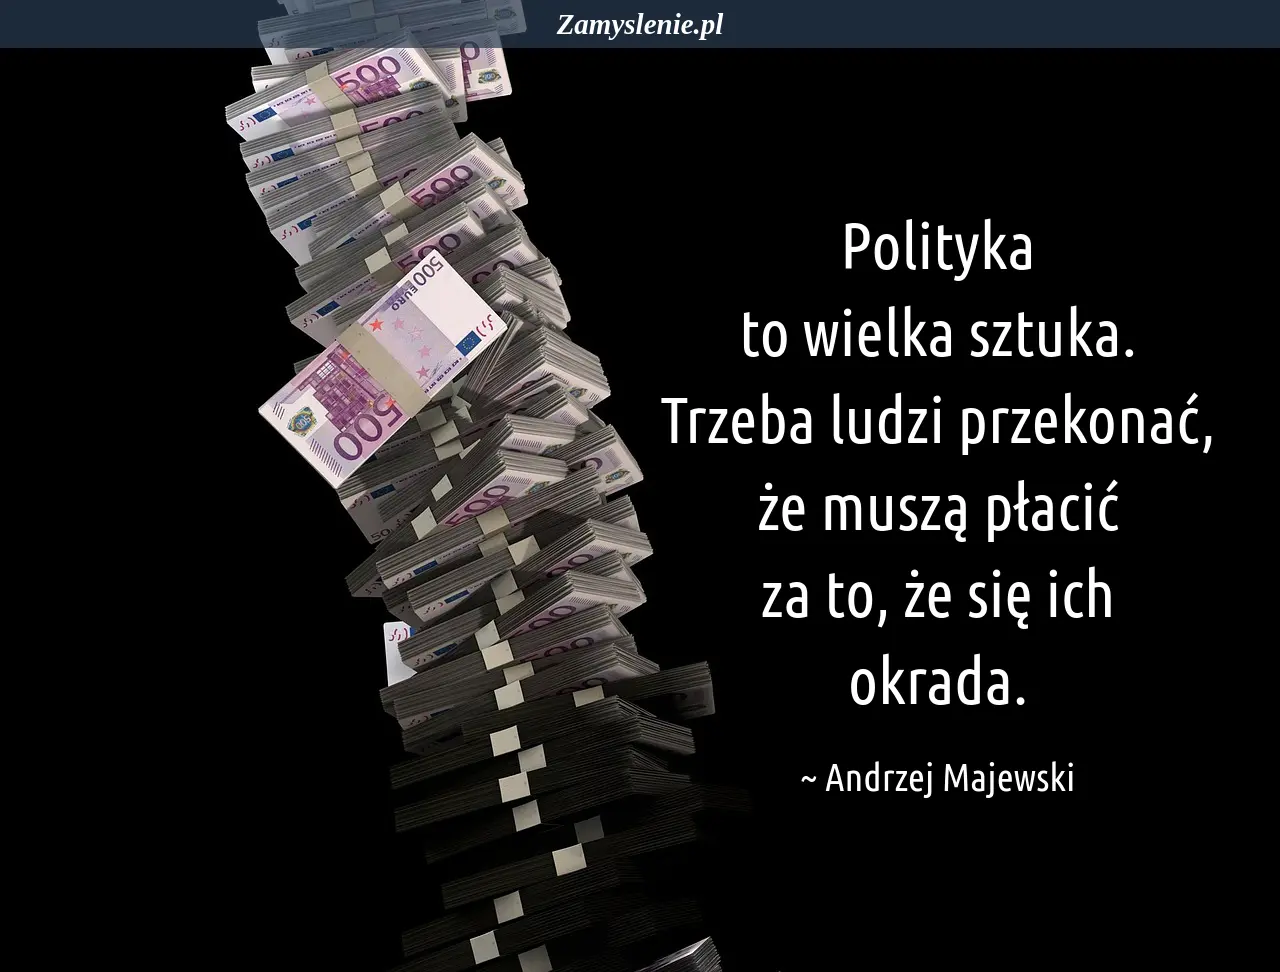 Obraz / mem do cytatu: Polityka to wielka sztuka. Trzeba ludzi przekonać, że muszą płacić za to, że się ich okrada.